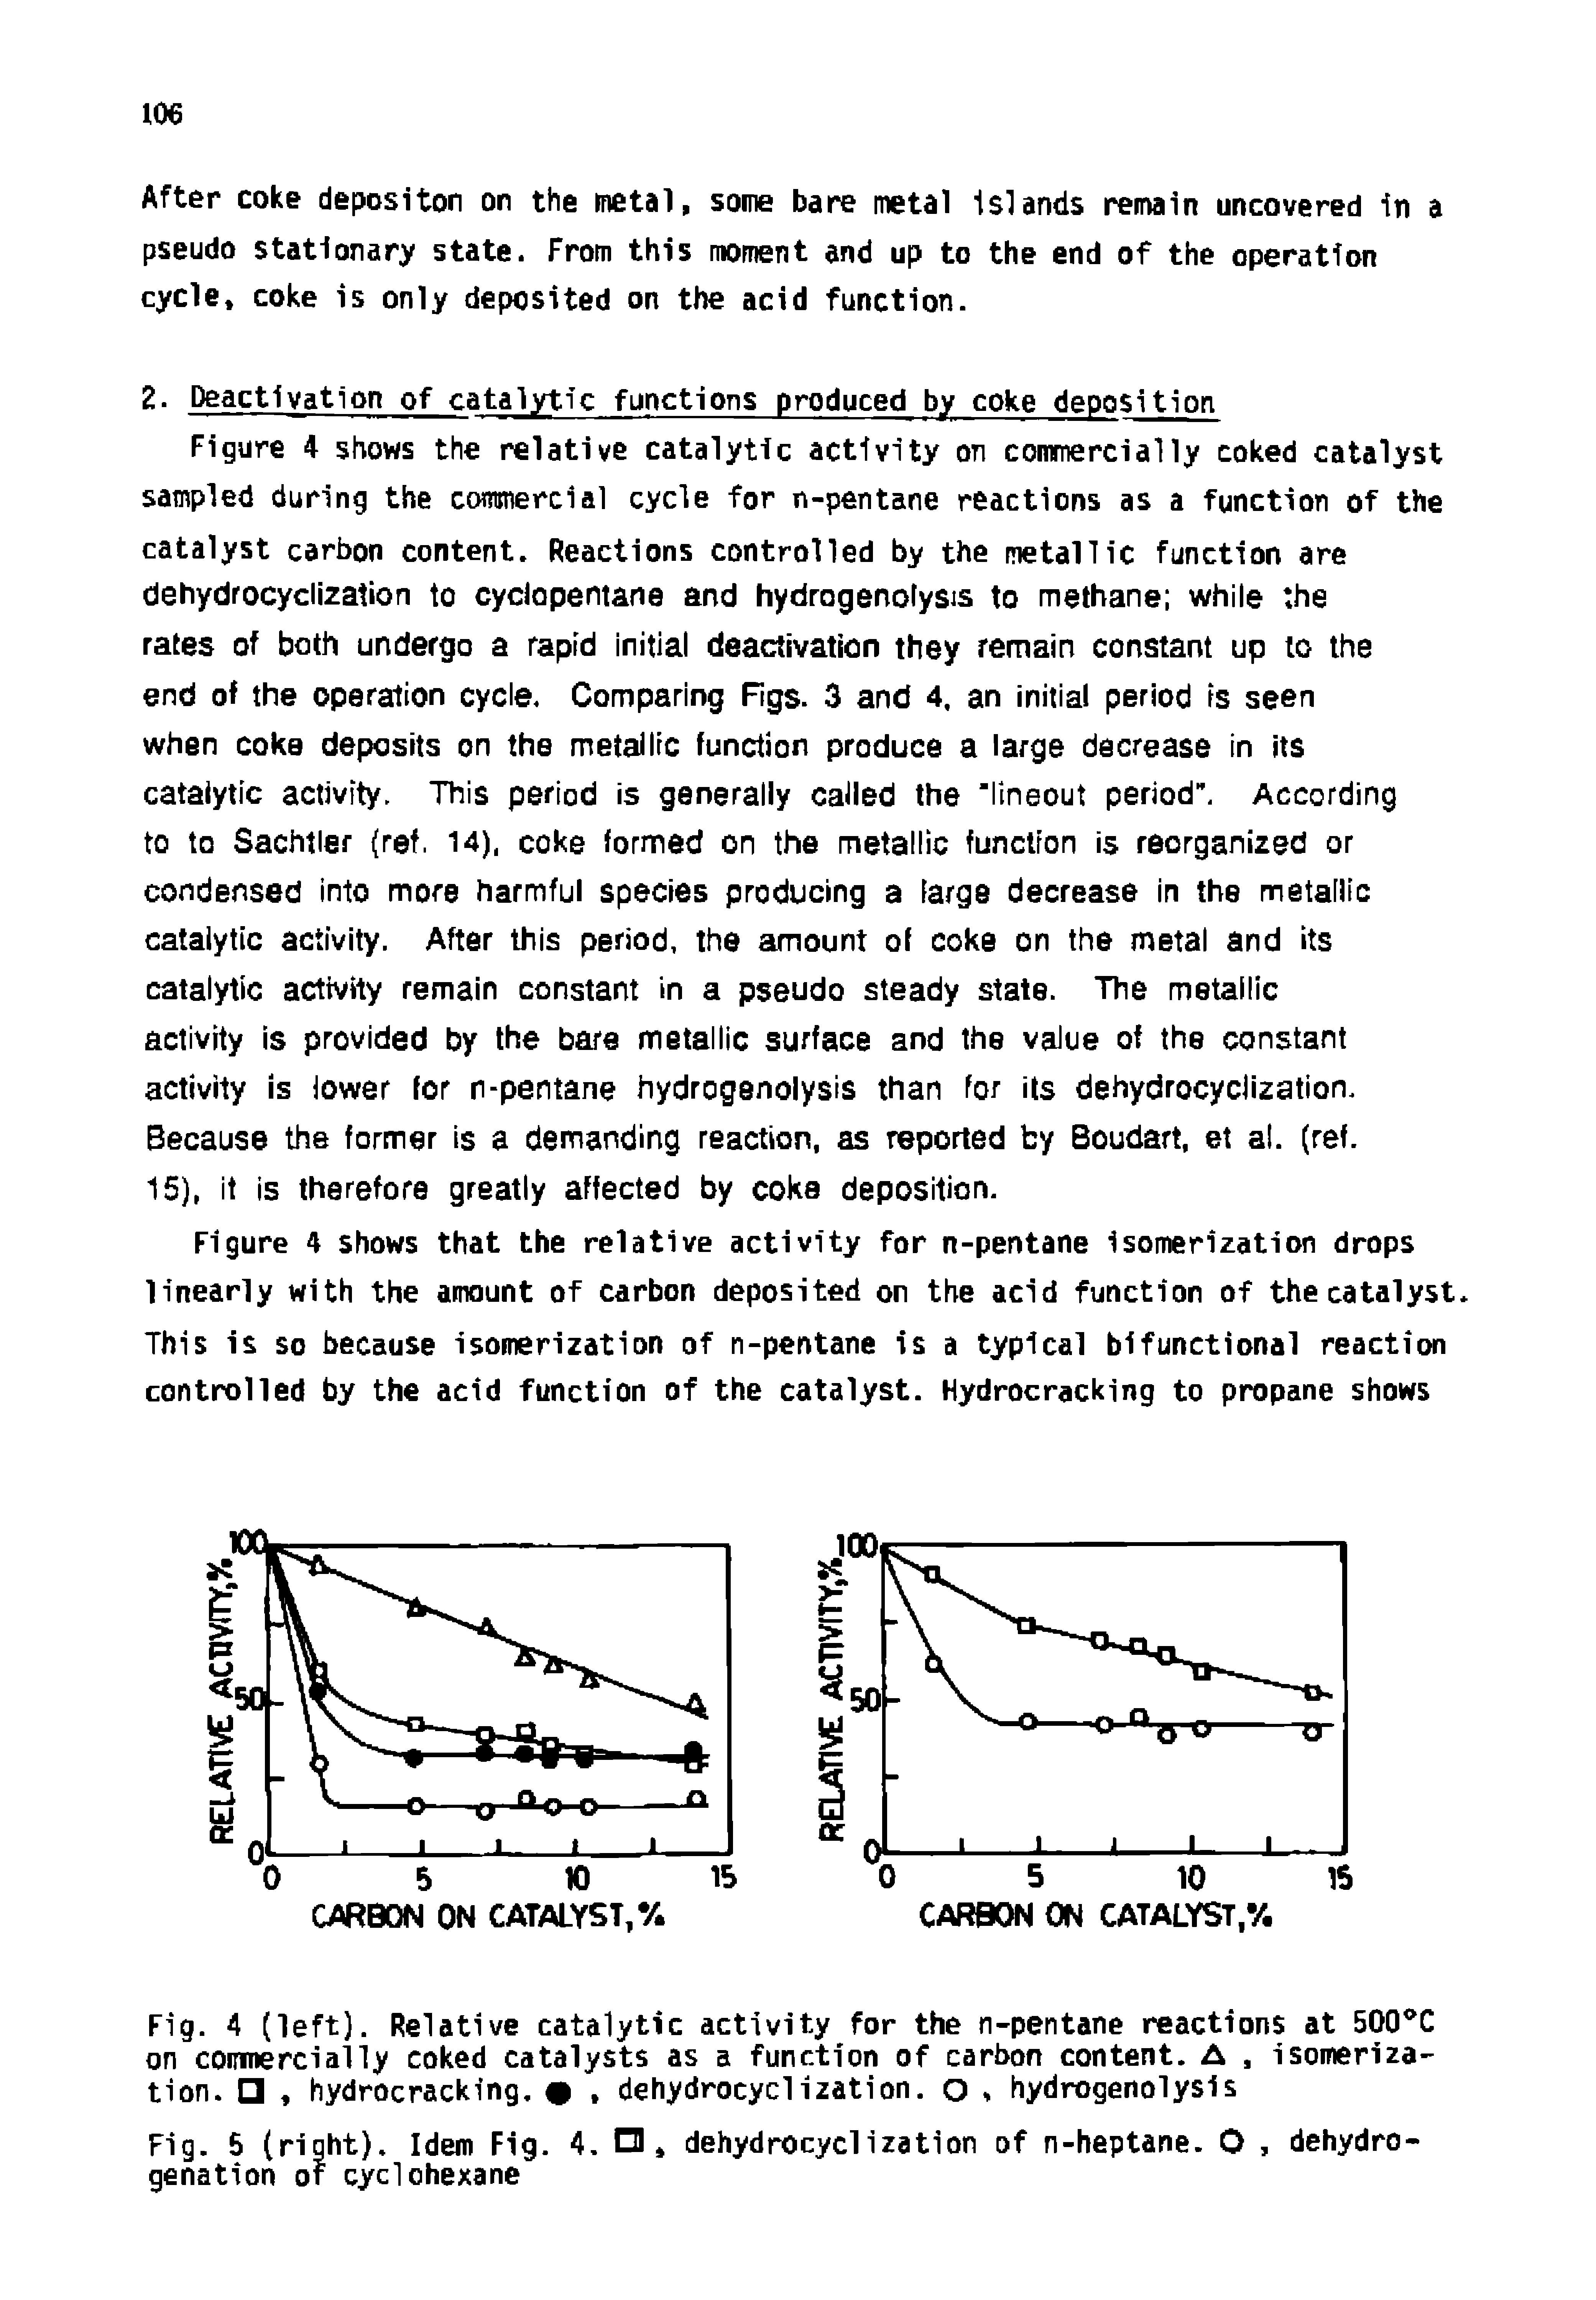 Fig. 5 (right). Idem Fig. 4. O, dehydrocyclization of n-heptane. O, dehydrogenation of cyclohexane...